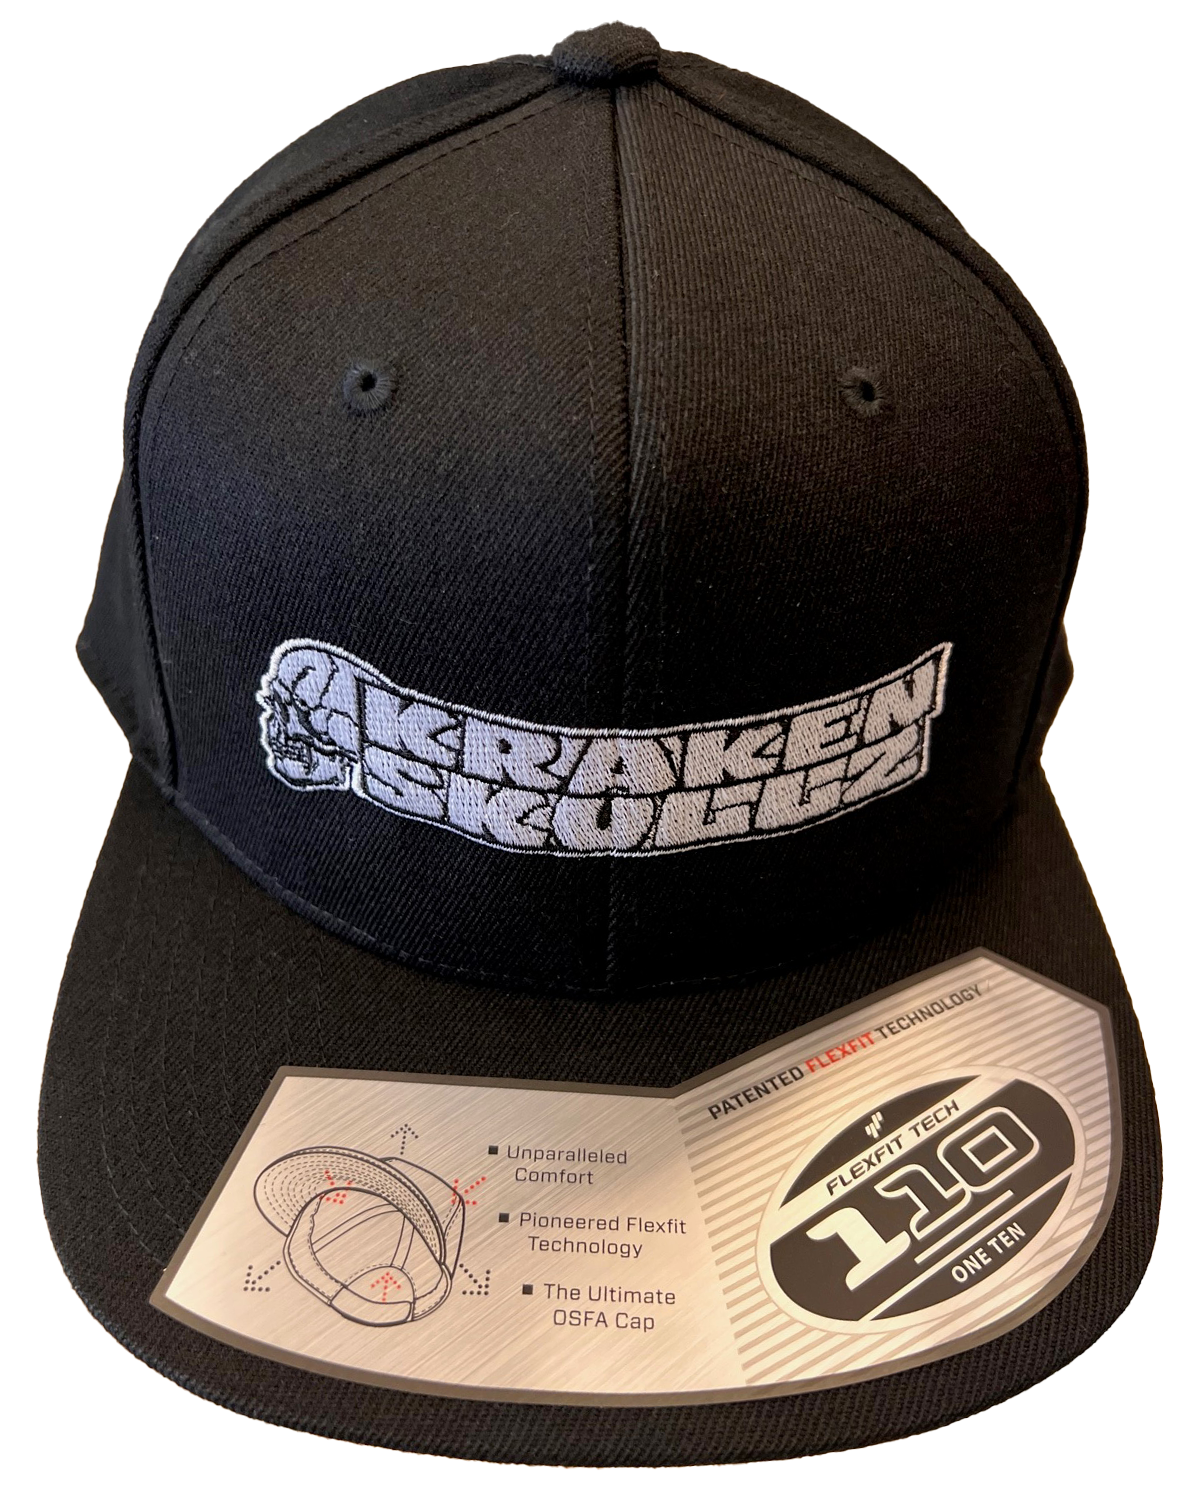 KS OG SIMPLE - Trucker SnapBack Flexfit Black Hat